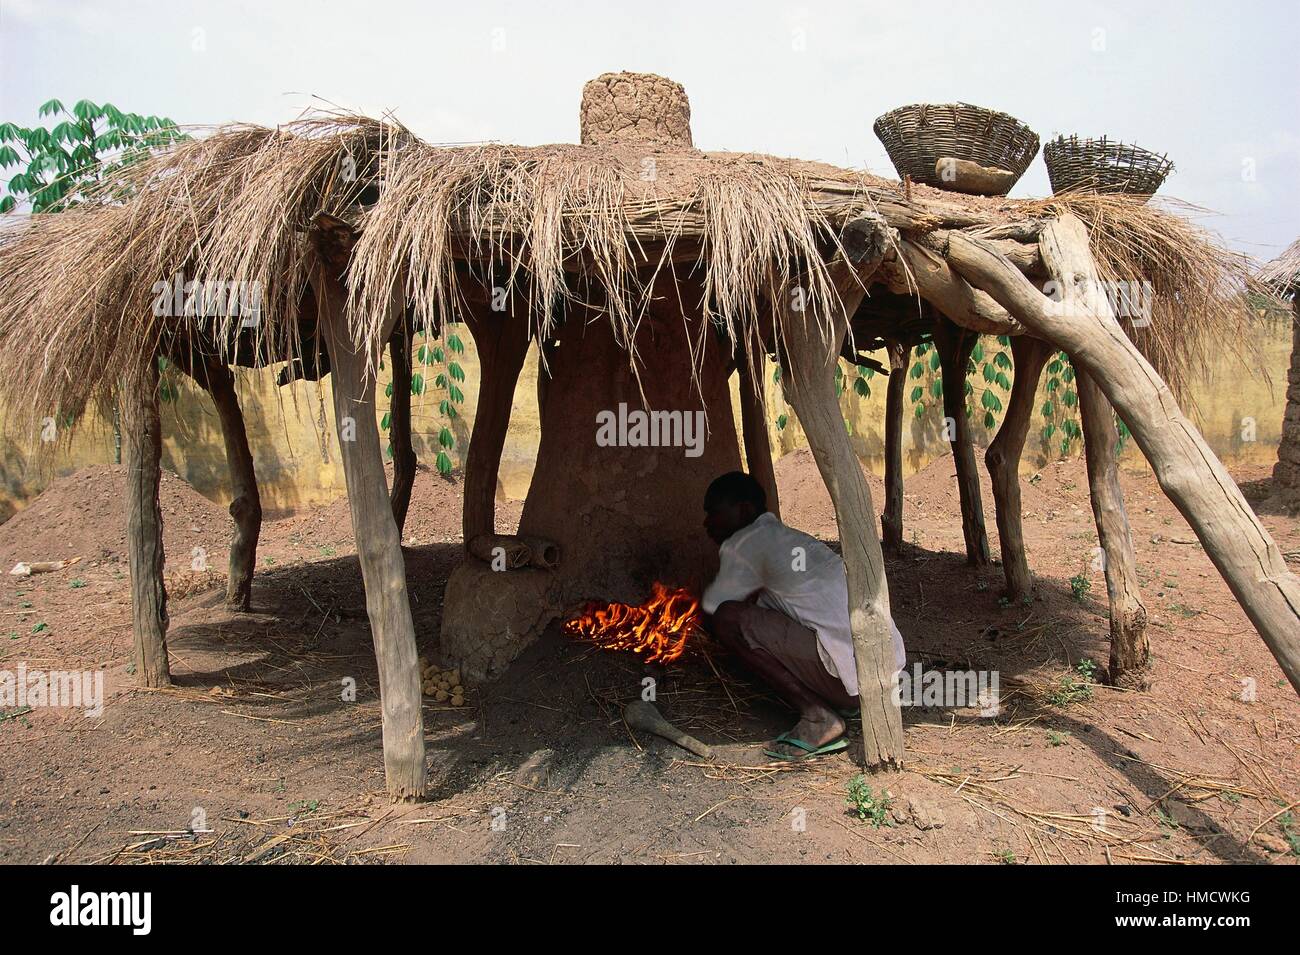 Un forgeron Sénoufo au travail dans une hutte au toit de chaume, Côte d'Ivoire. Banque D'Images